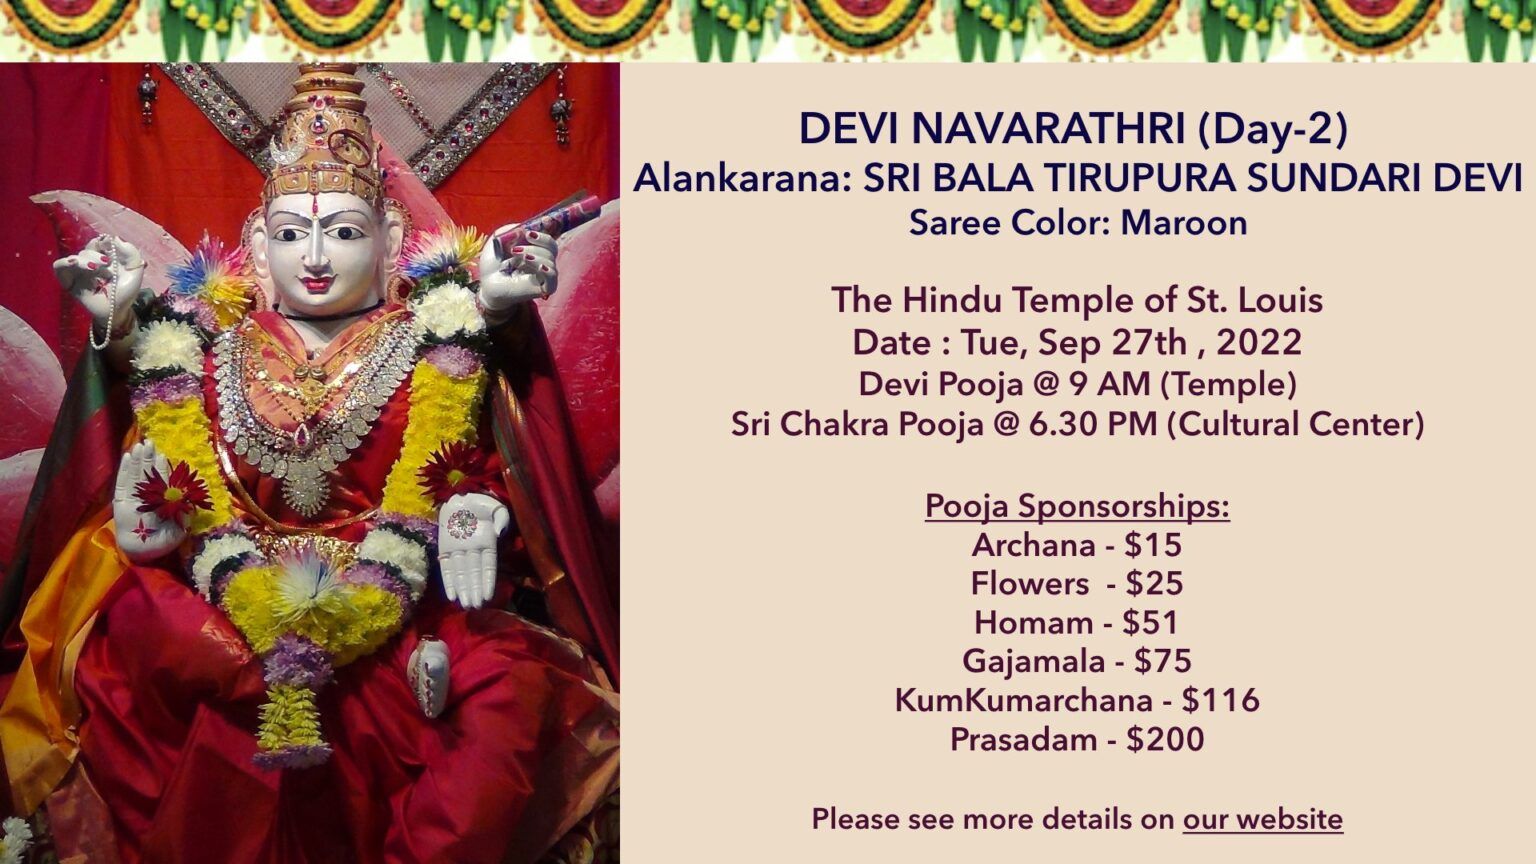 Devi Navarathri Day 1